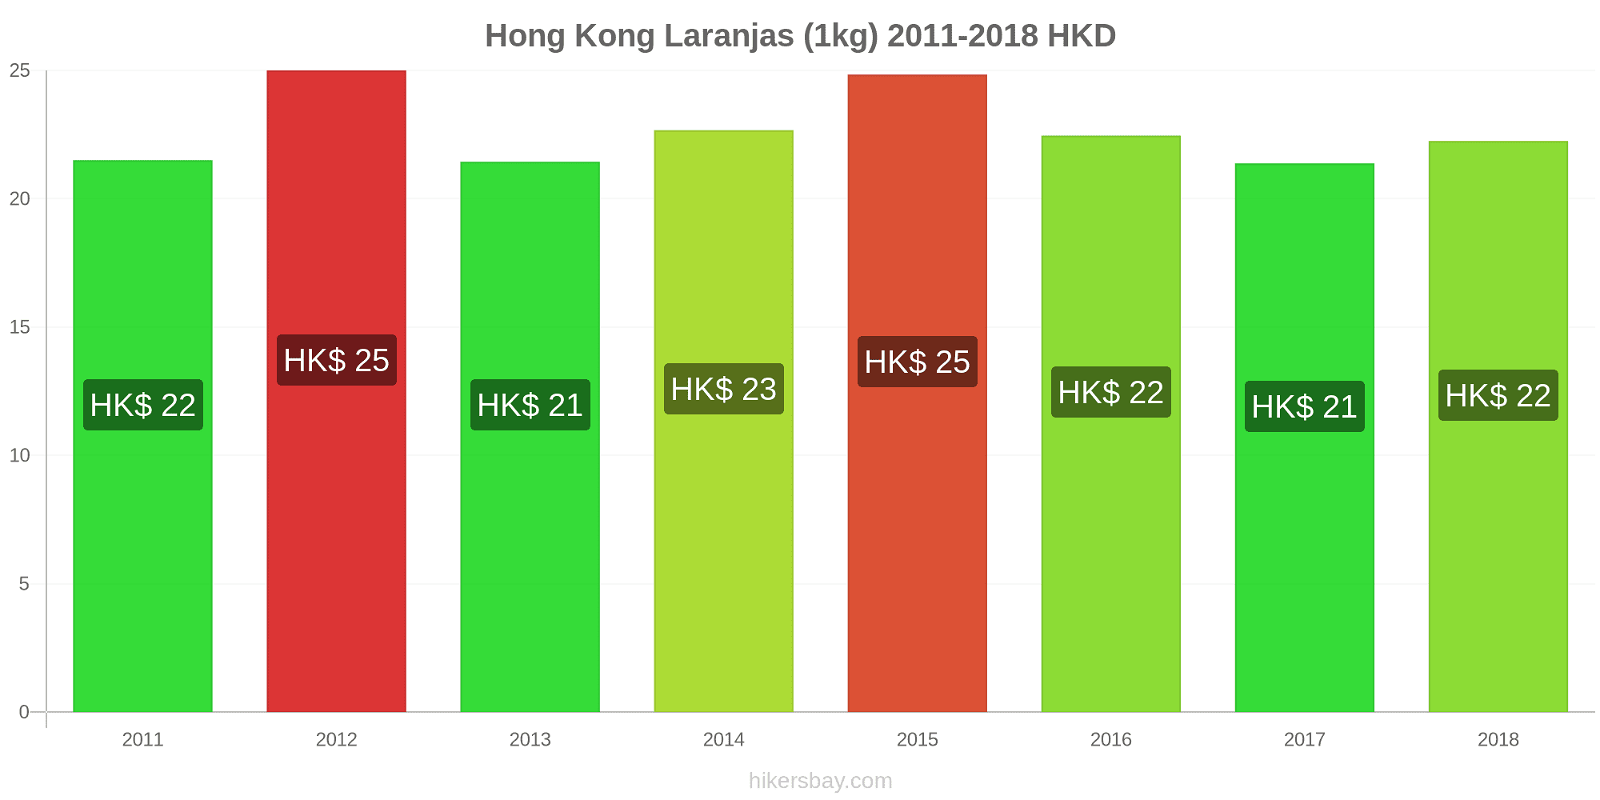 Hong Kong mudanças de preços Laranjas (1kg) hikersbay.com